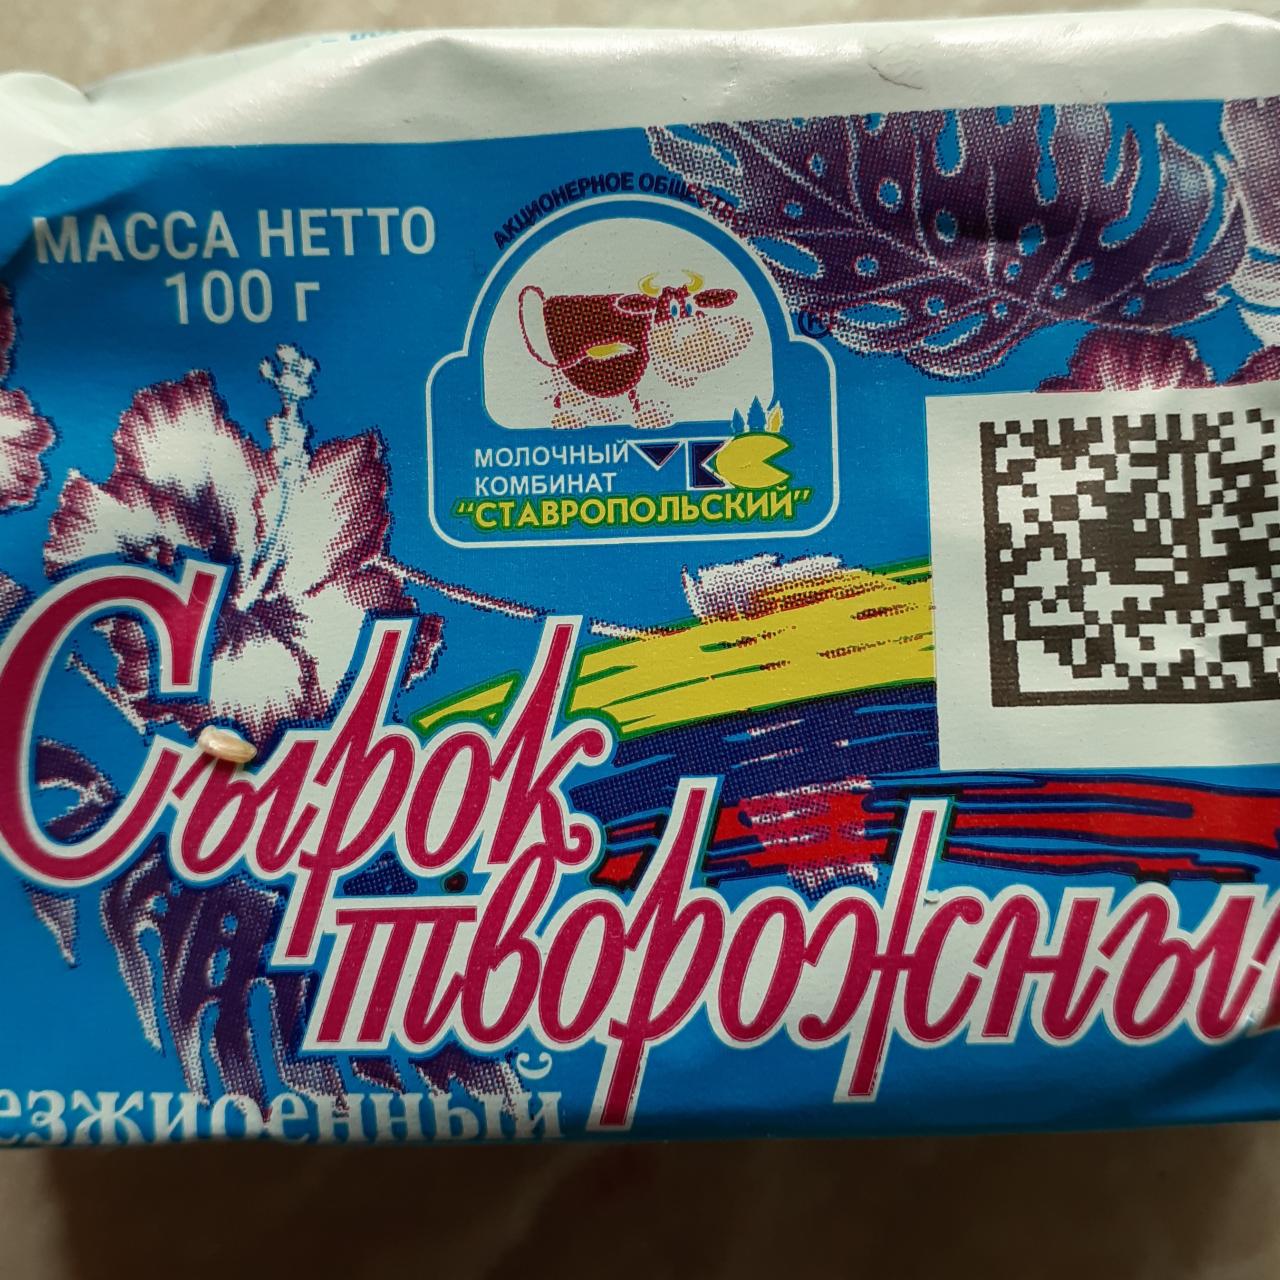 Фото - Сырок творожный обезжиренный Молочный комбинат Ставропольский